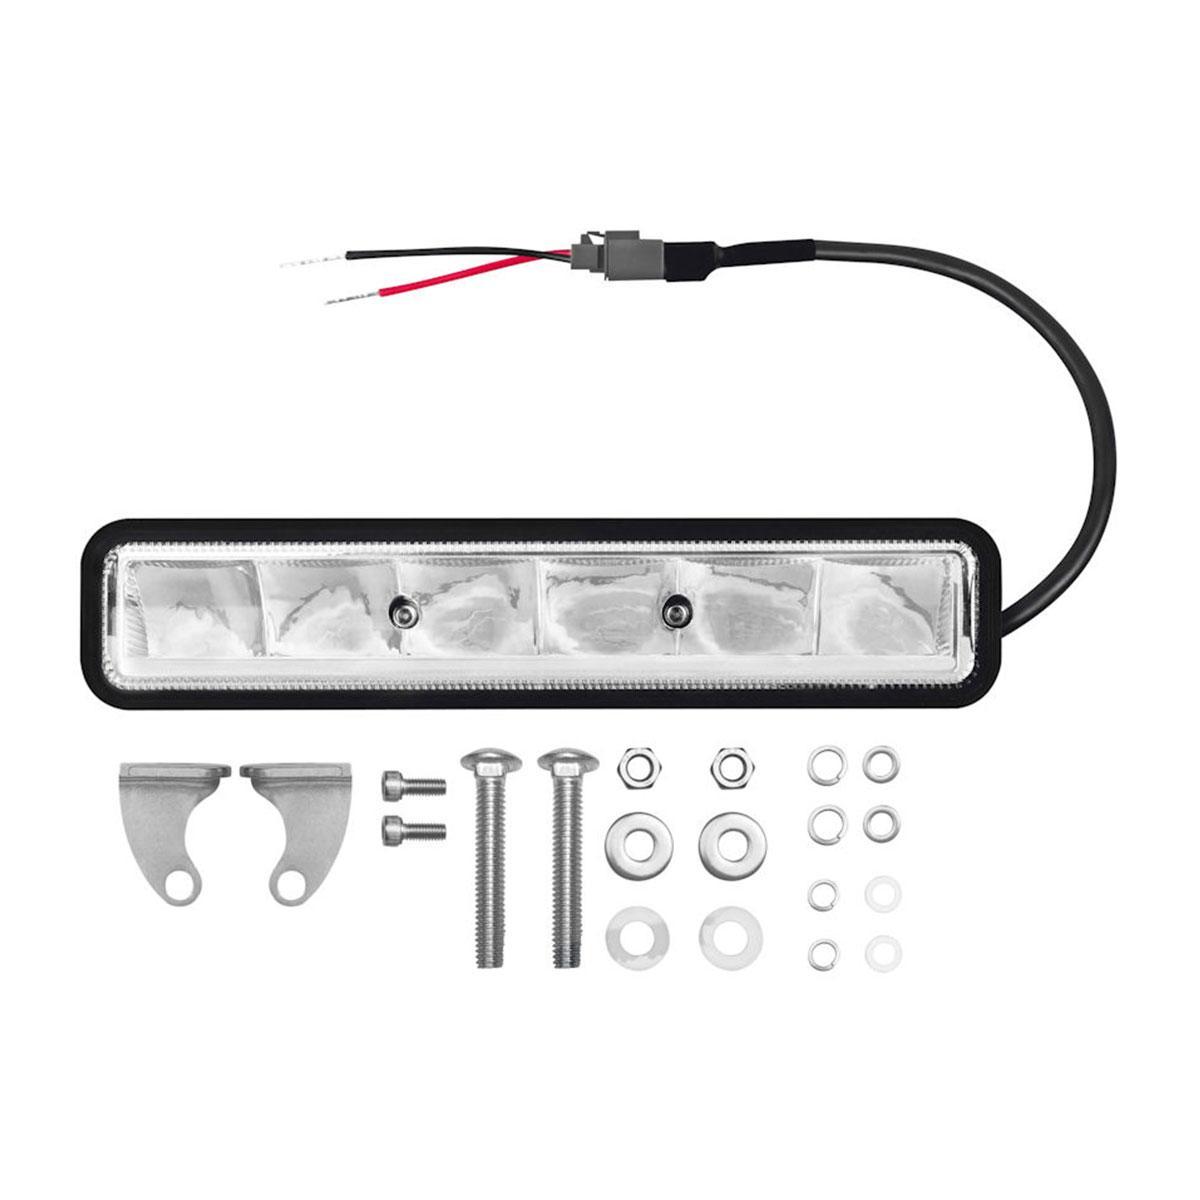 OSRAM LEDriving Scheinwerfer für VW Amarok - BLACK EDITION